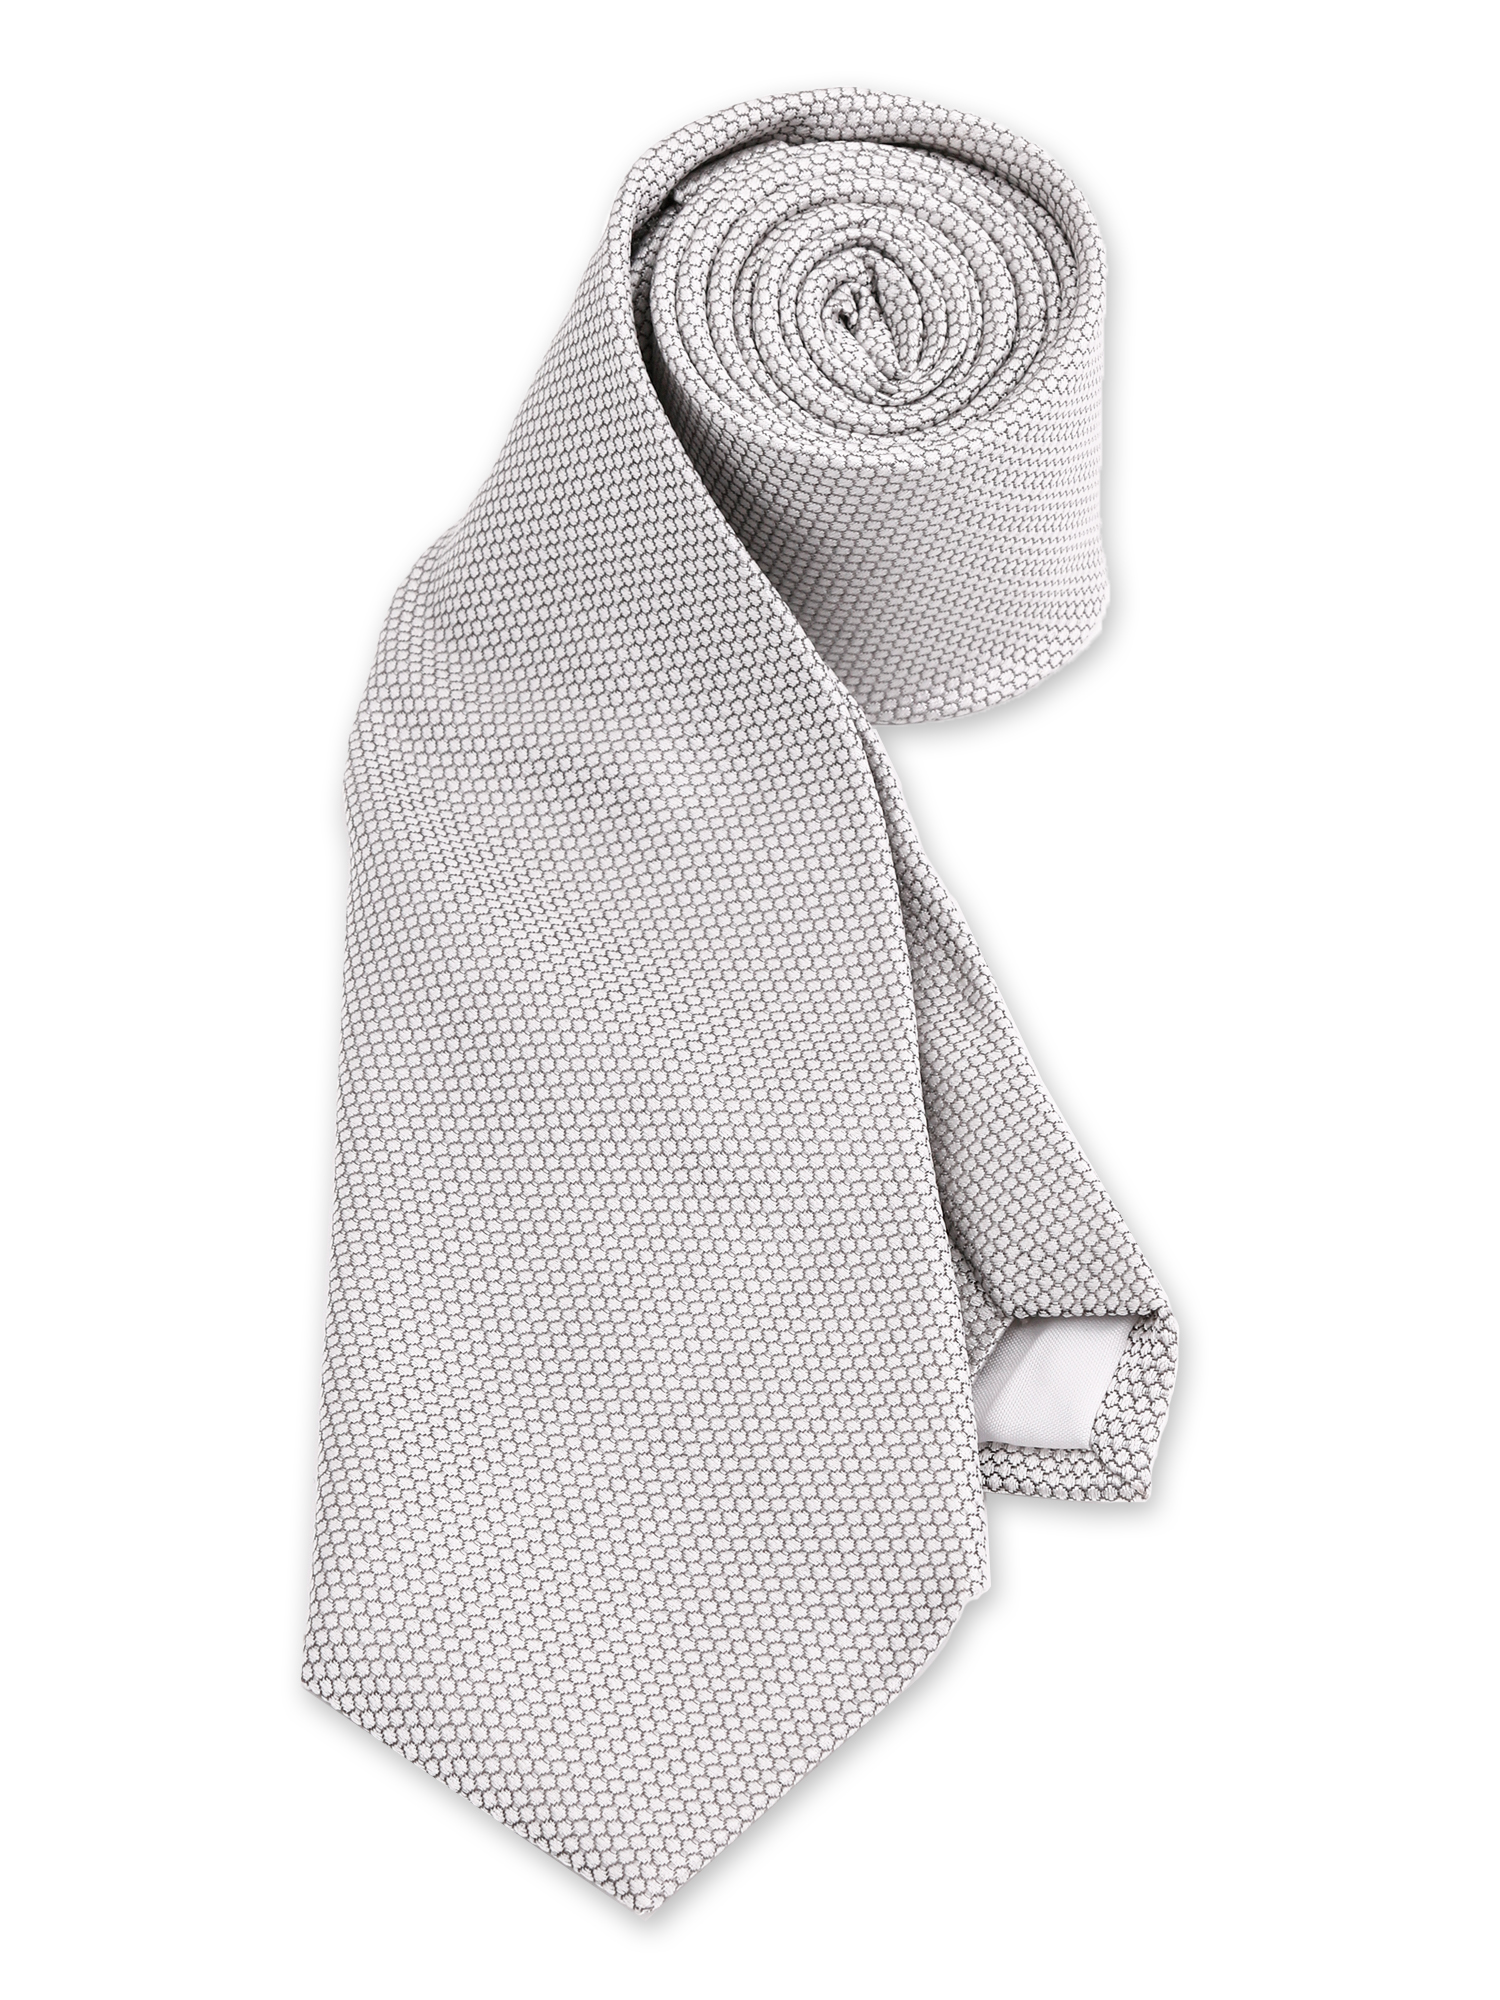 Krawatte von Steiner Luise